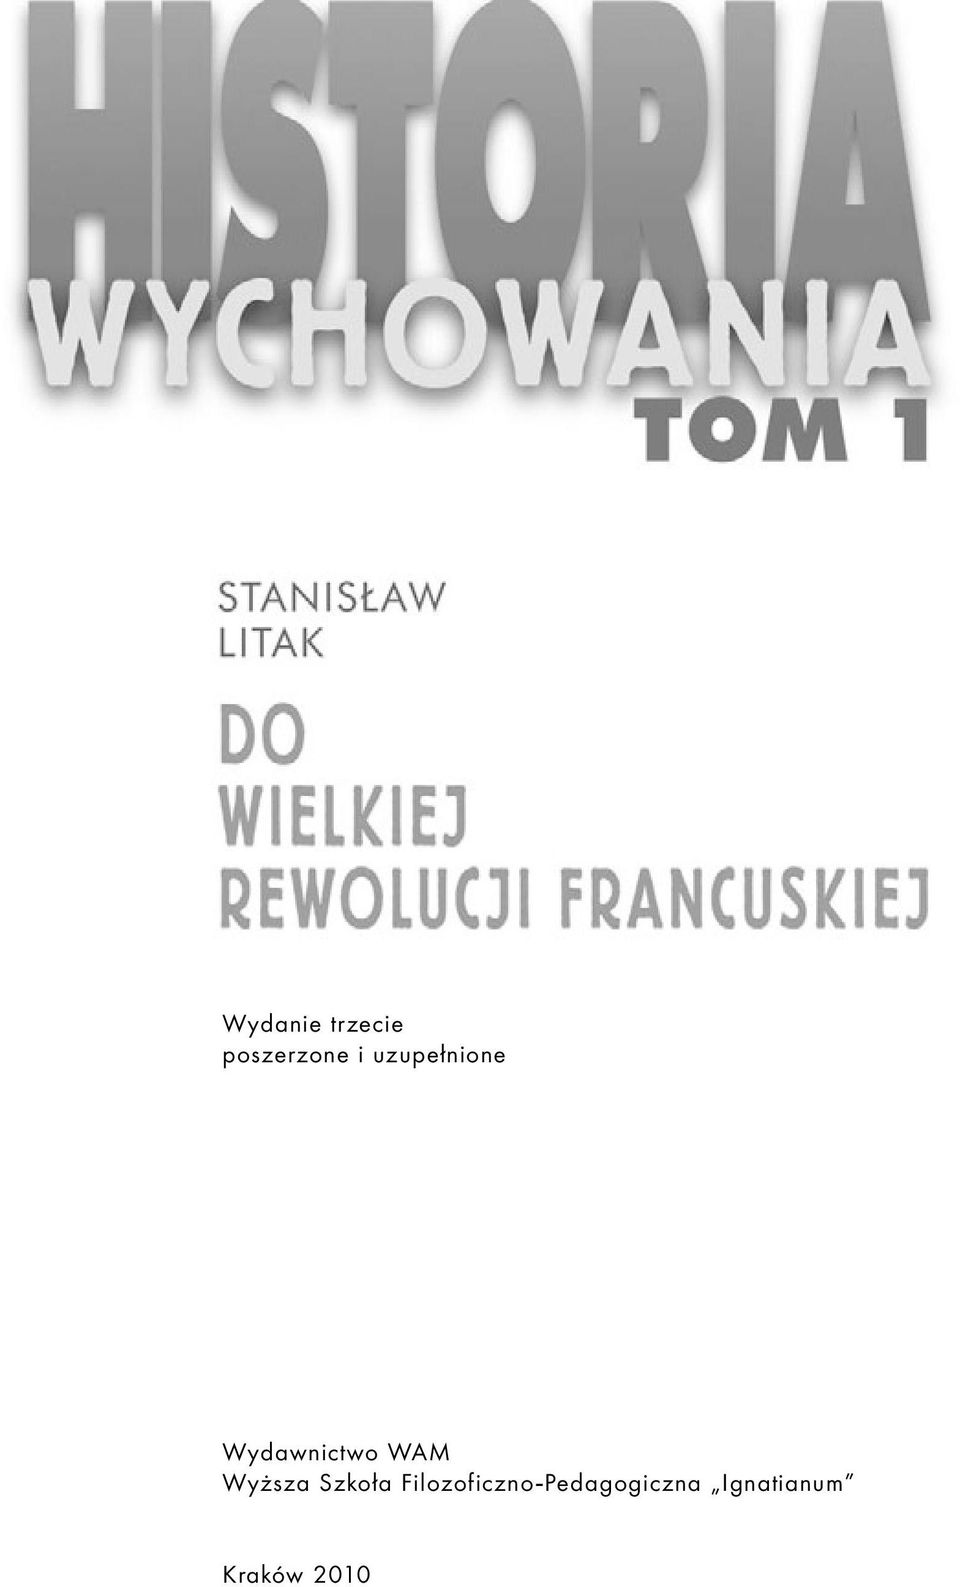 Wydawnictwo WAM Wyższa Szkoła Filozoficzno-Pedagogiczna Ignatianum Kraków 2009